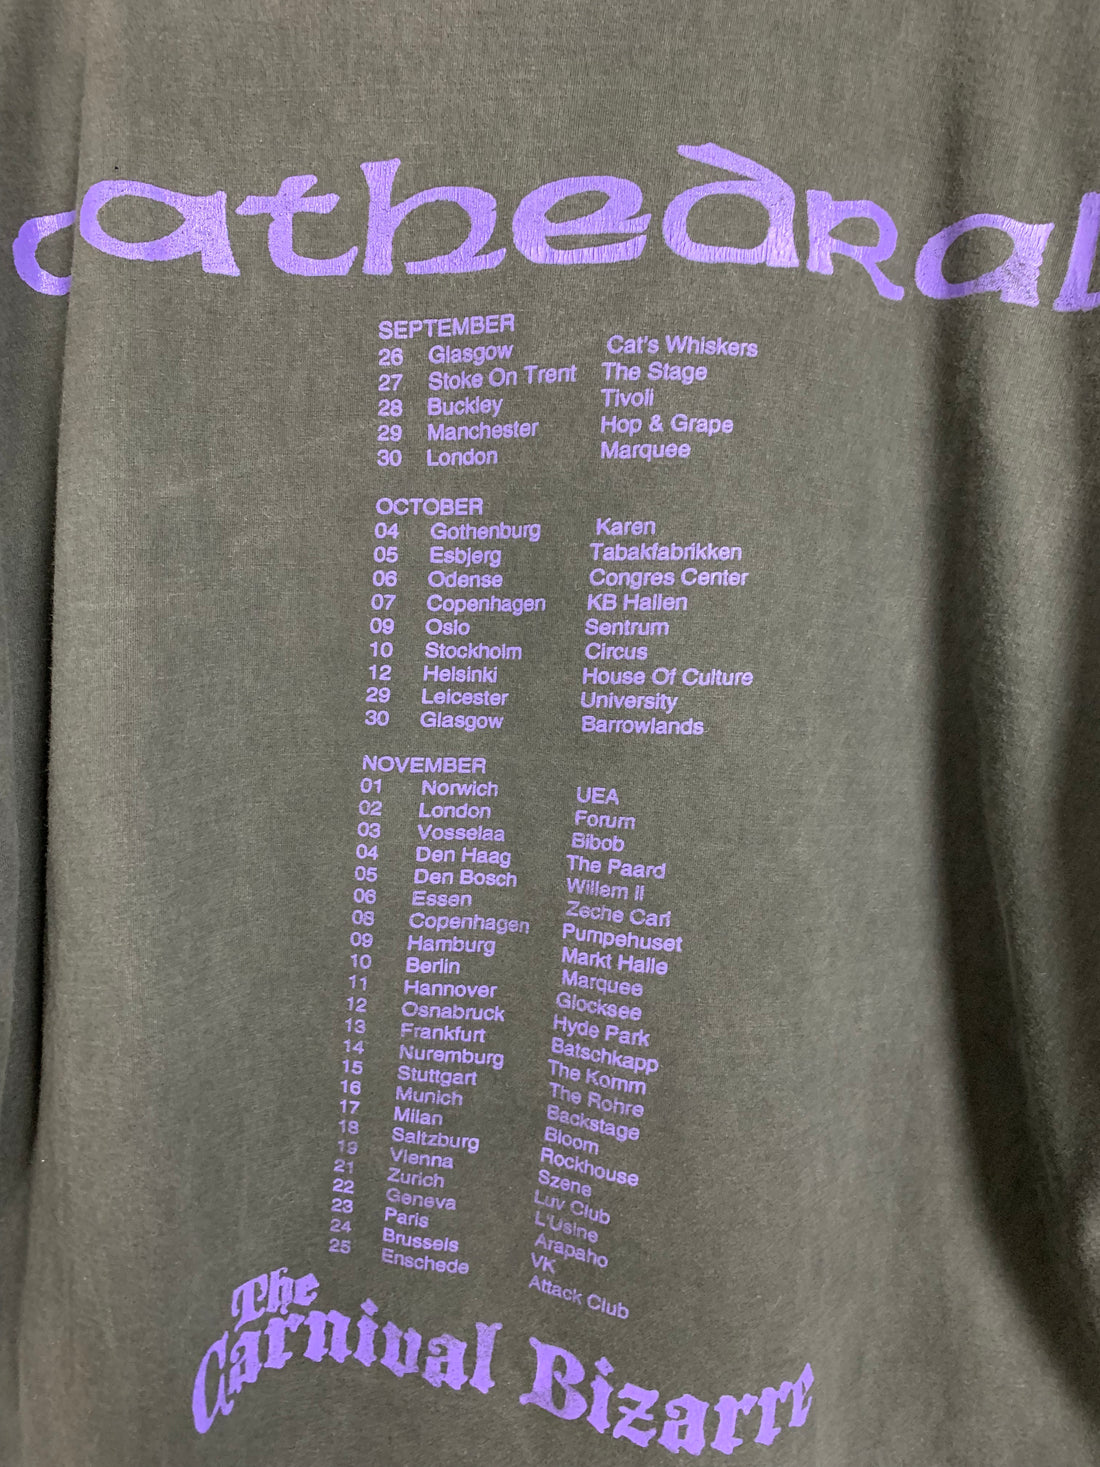 Cathedral 1995 Hopkins Witchfinder Vintage T-Shirt